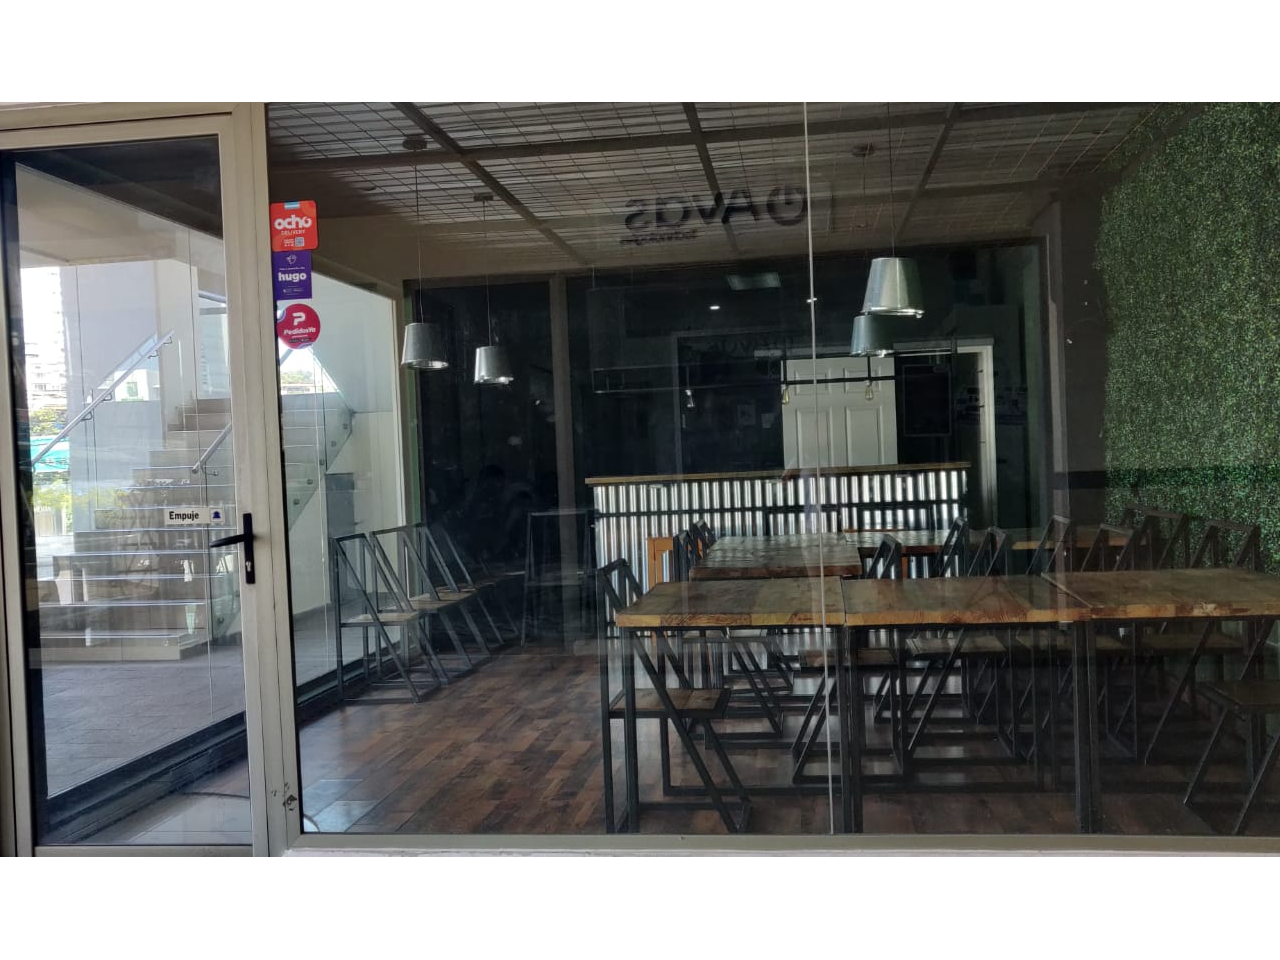 Local comercial para restaurante con división perimetral de vidrio de piso al techo una puerta, y muebles de restaurante dentro del local.